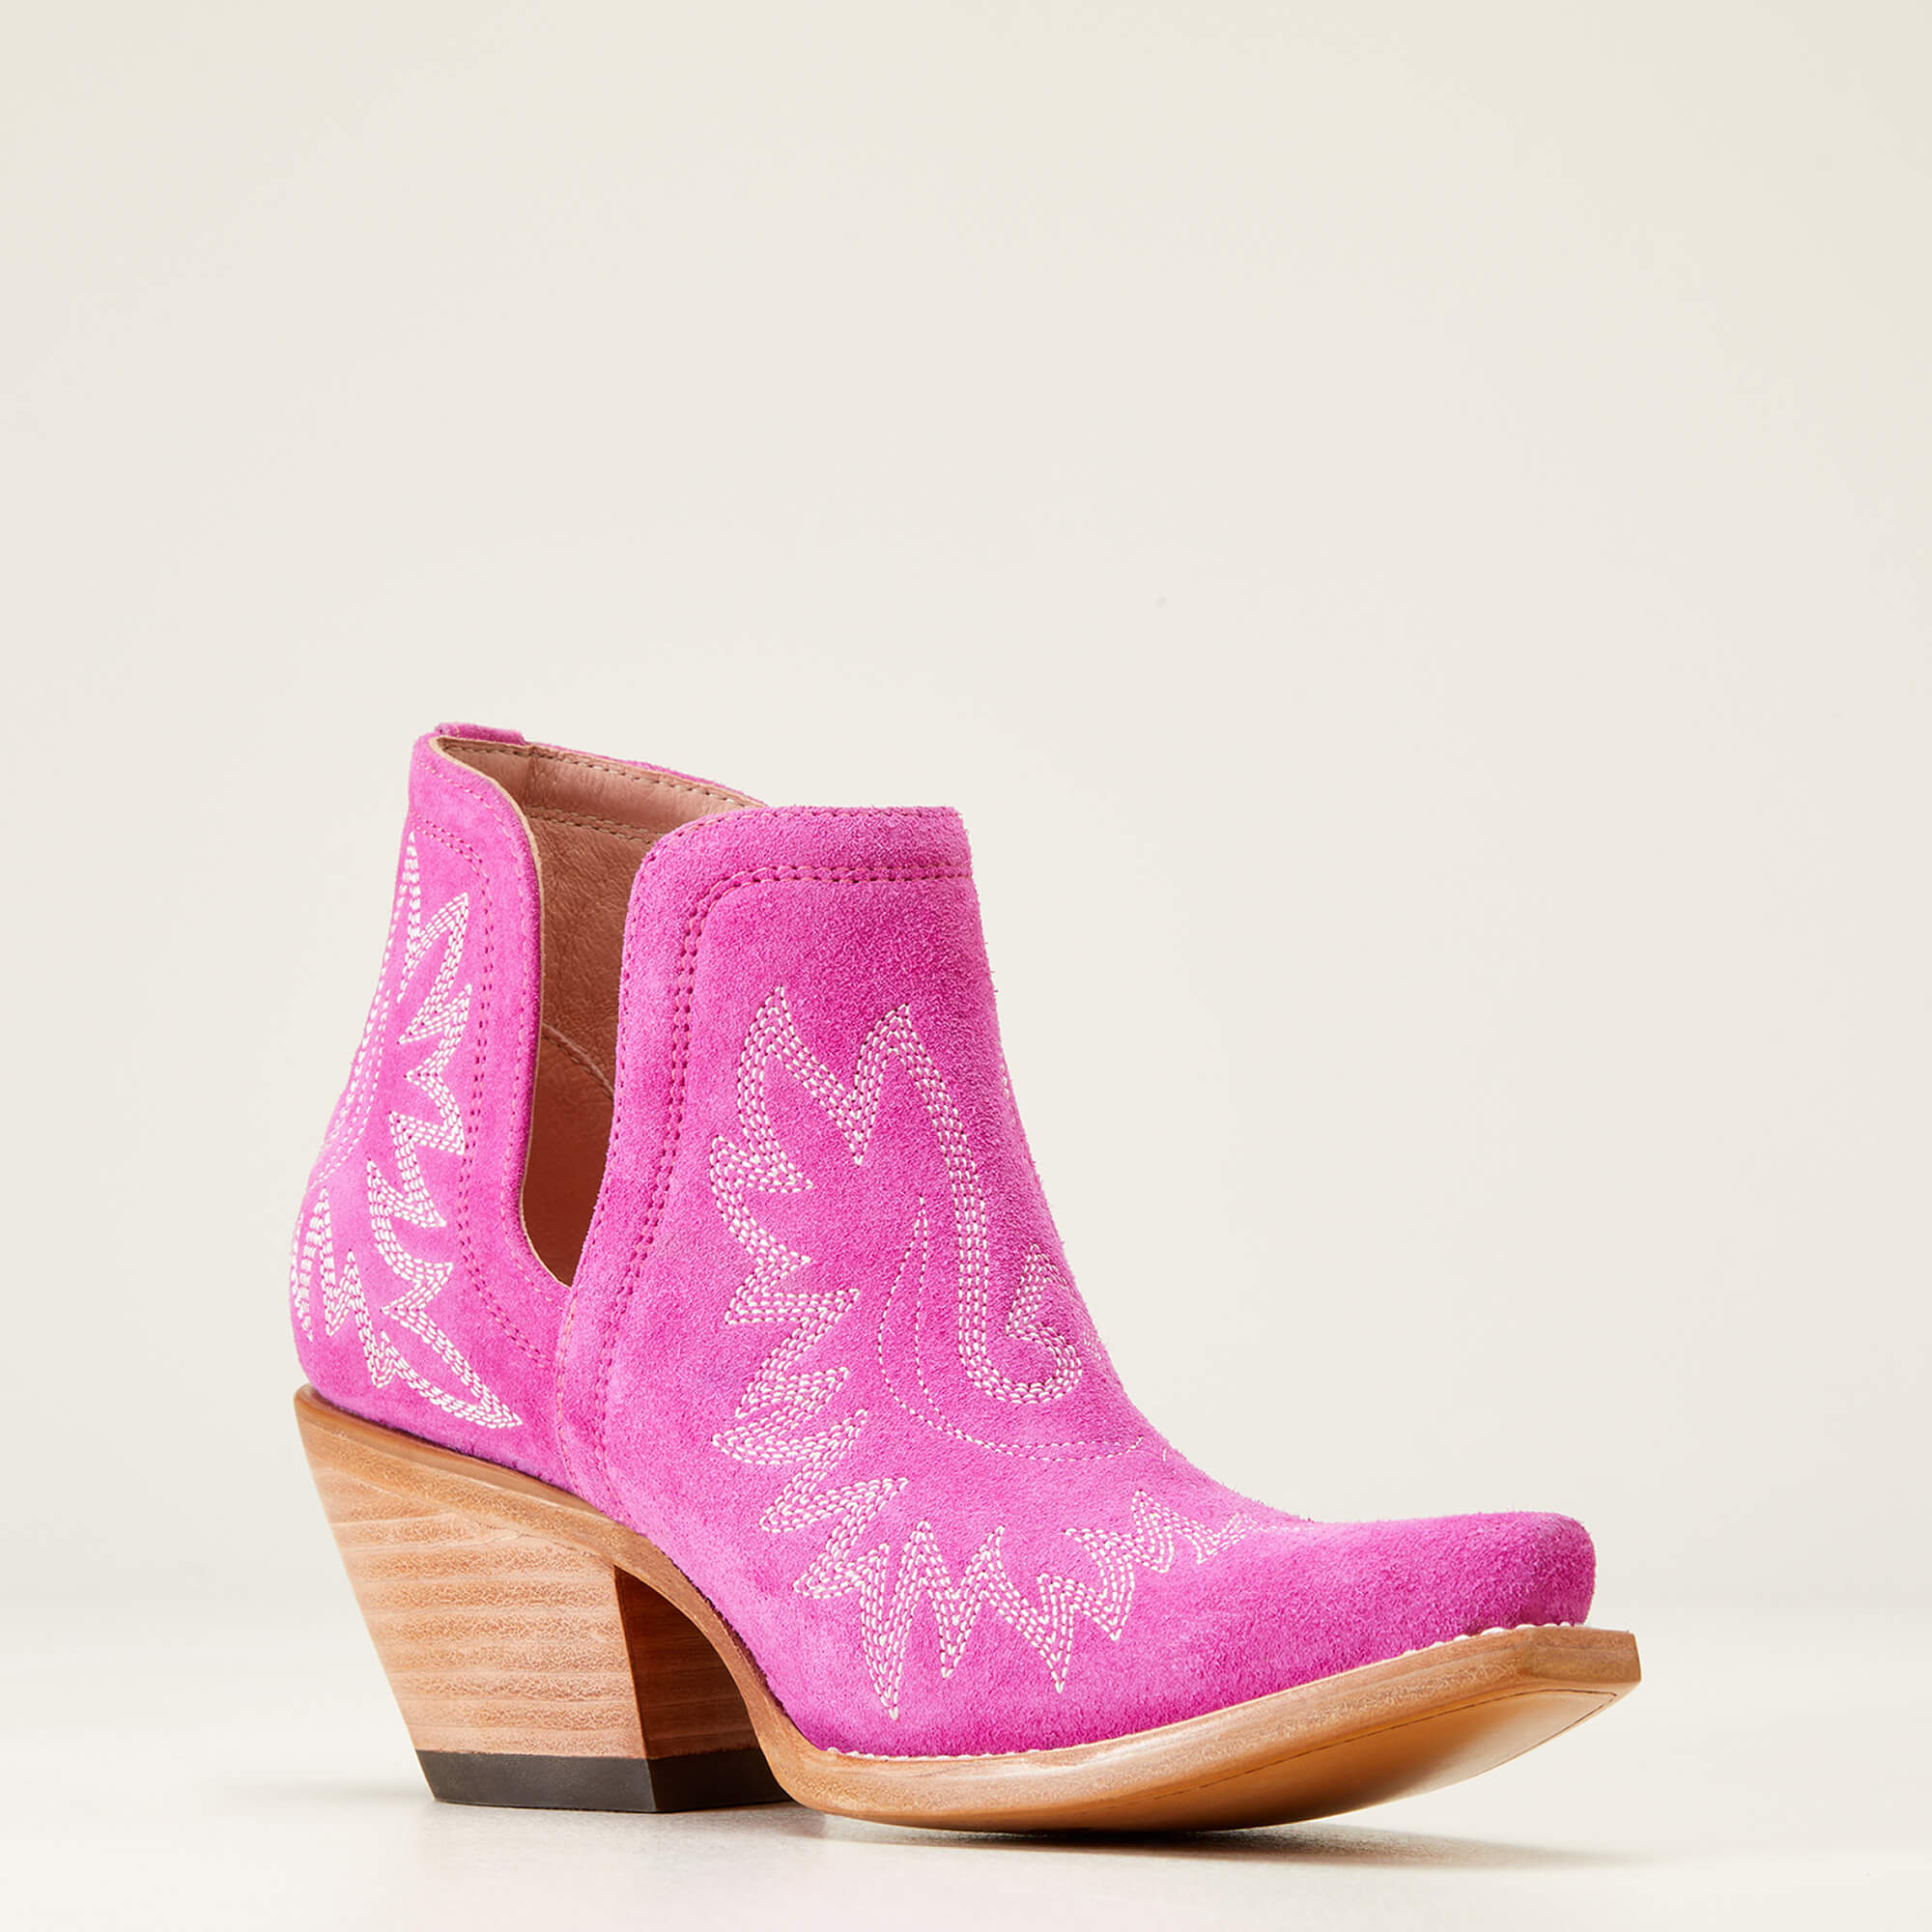 Ariat Women's Dixon Western Boot